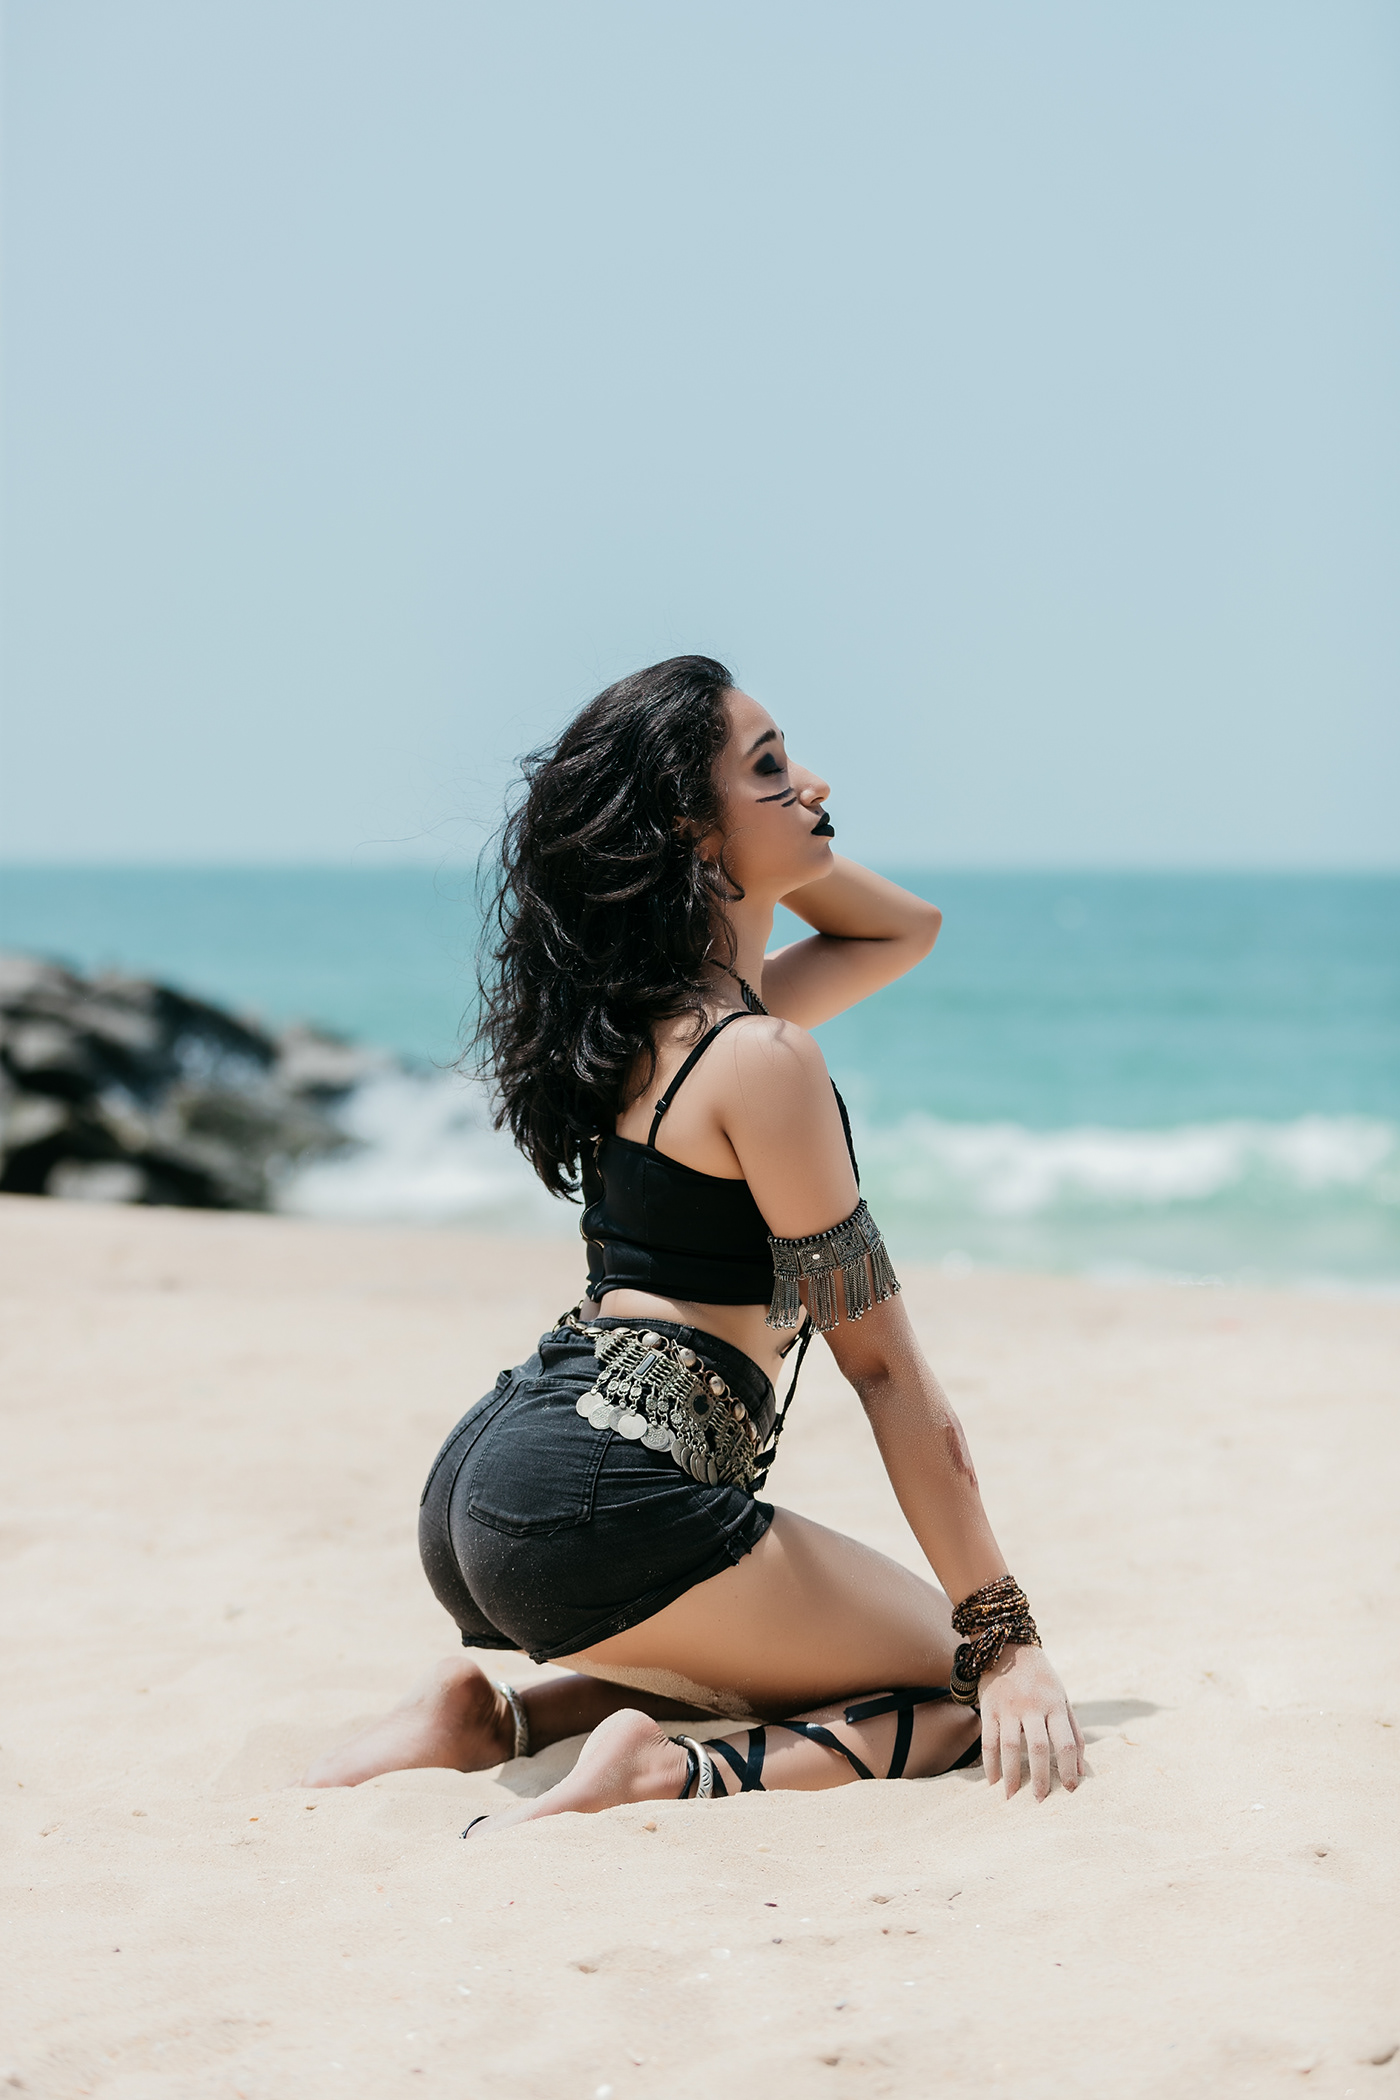 beach butt curves Denim model photographer portrait sexy shorts teen